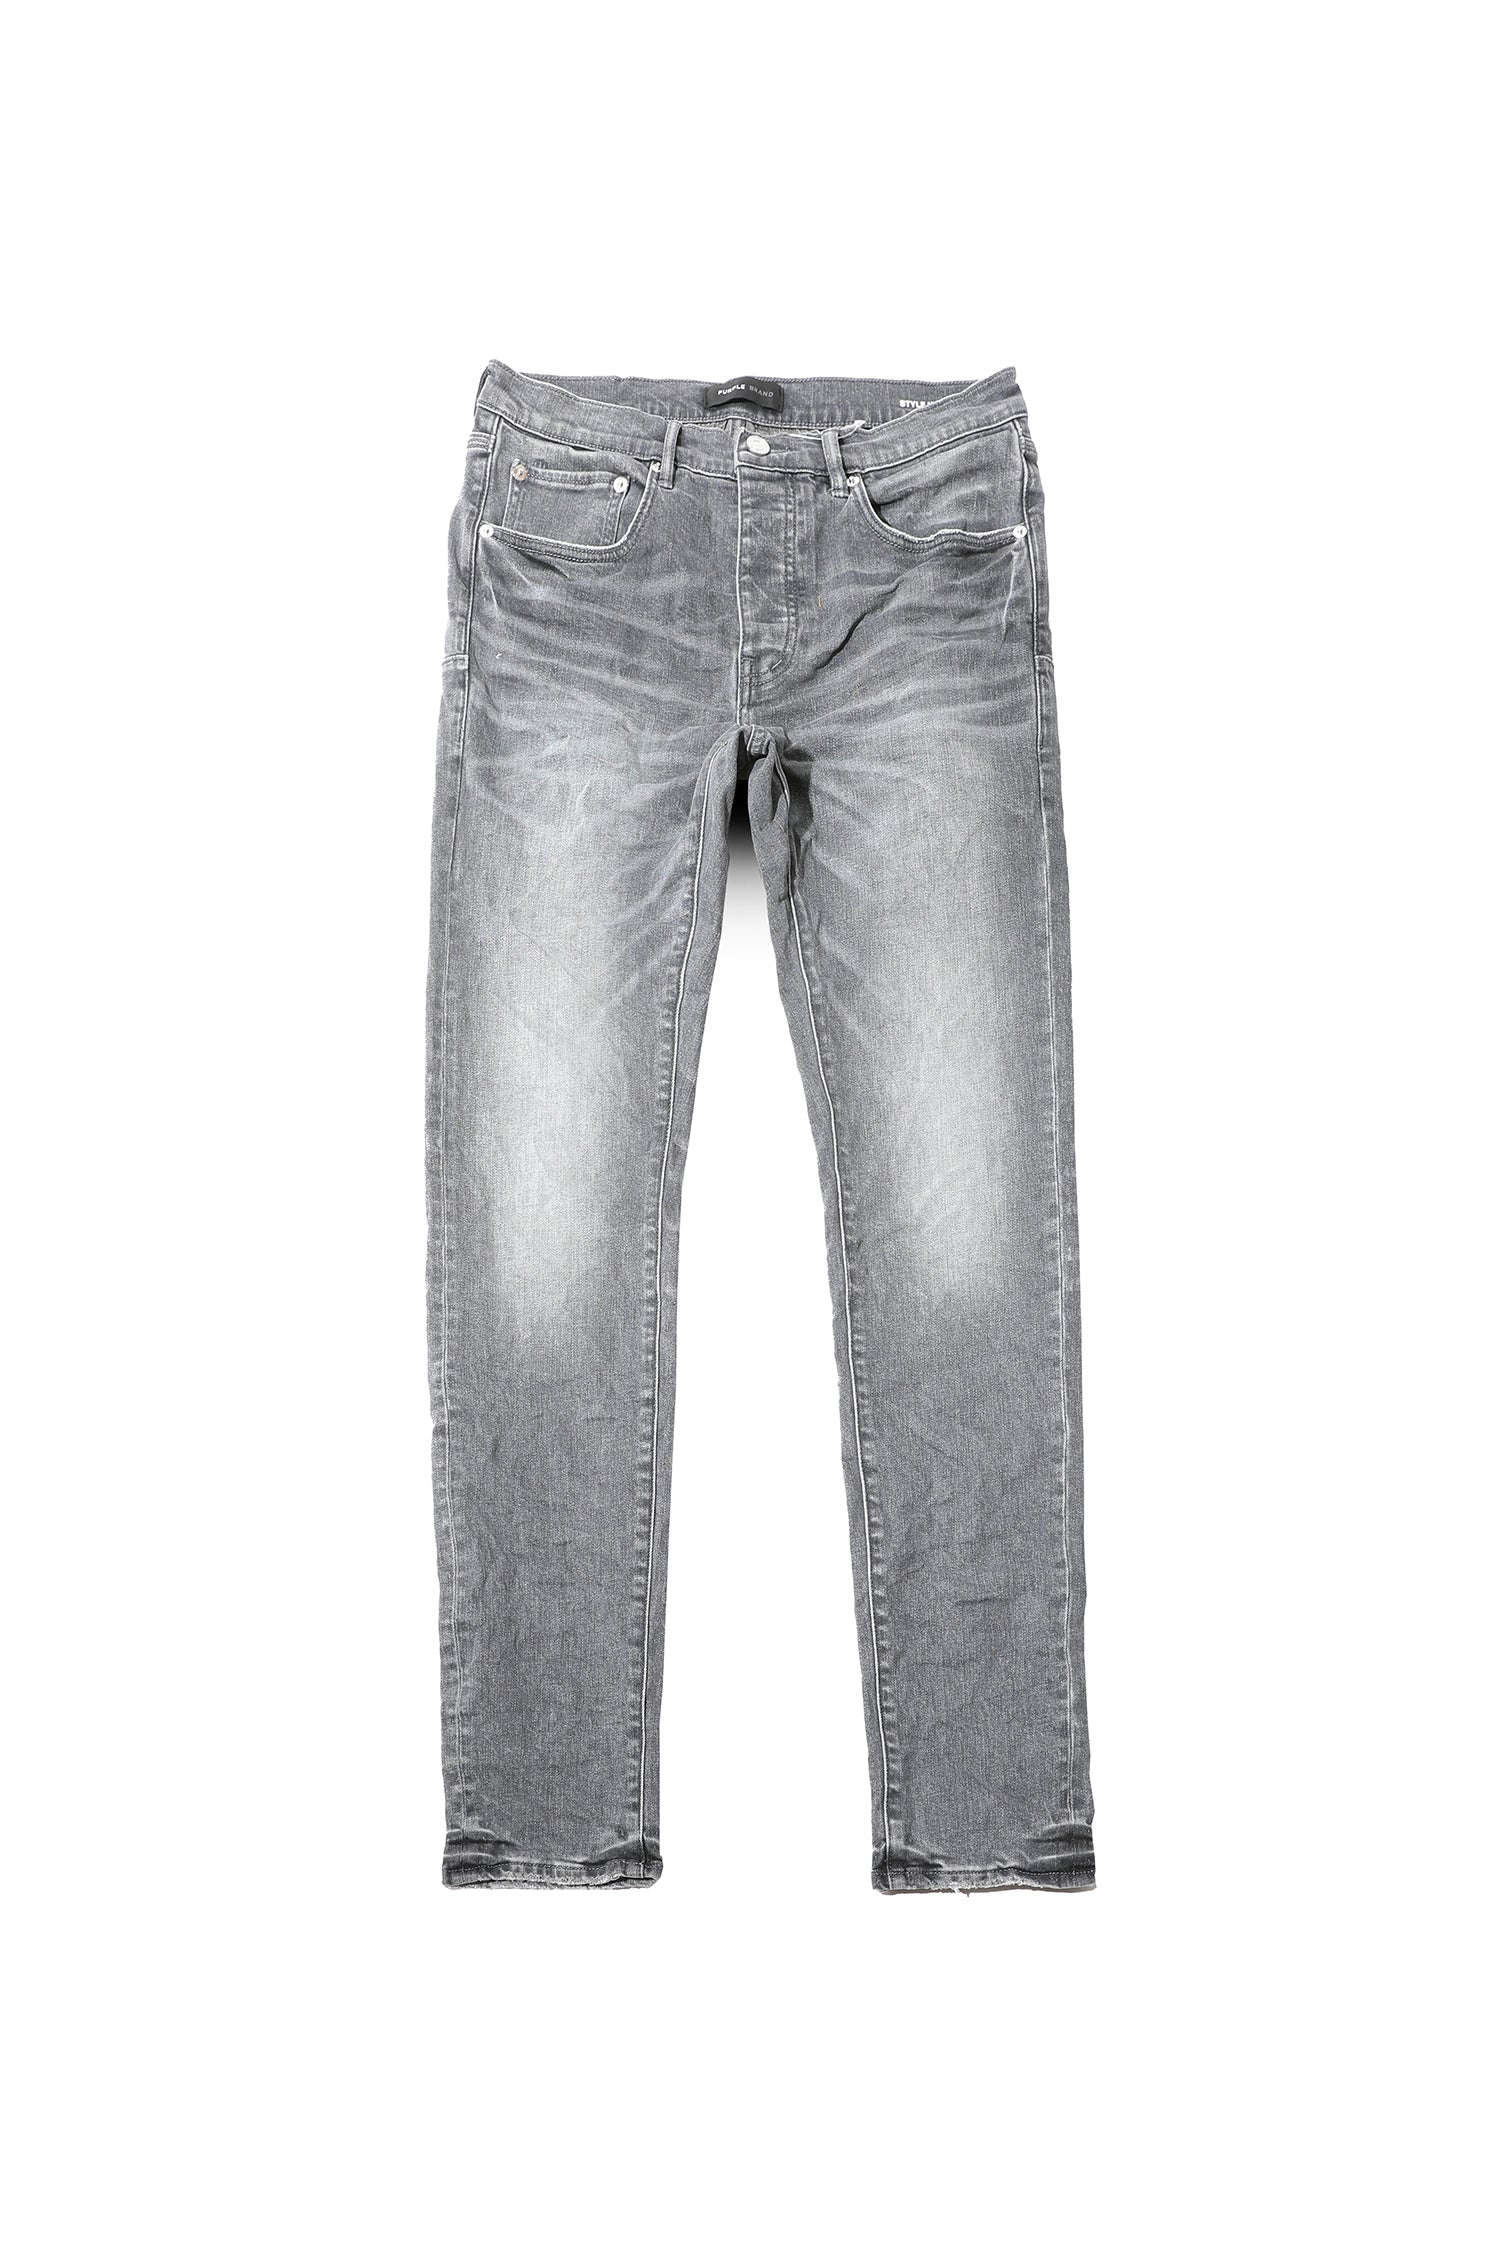 Buy PURPLE BRAND Vintage Painted Skinny Jeans - Indigo Grey At 40